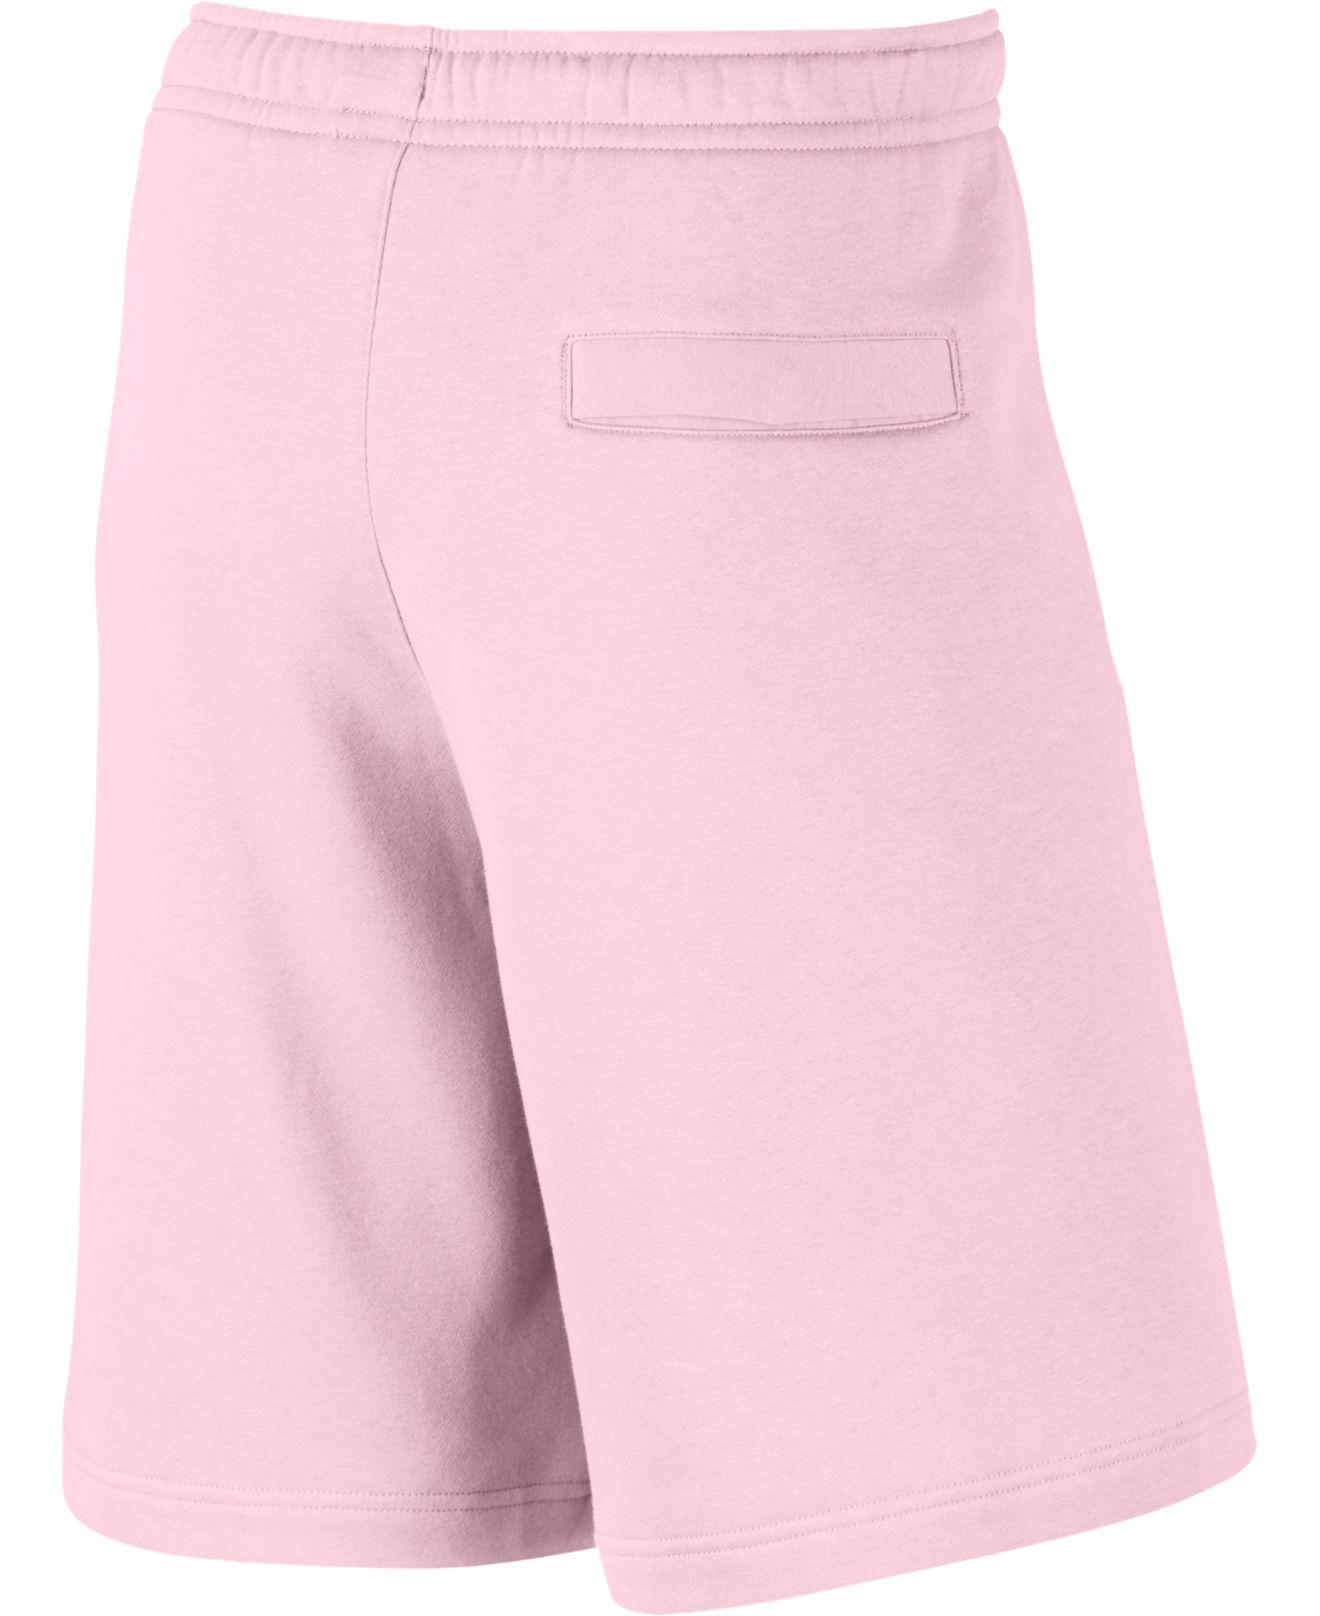 pink nike cotton shorts